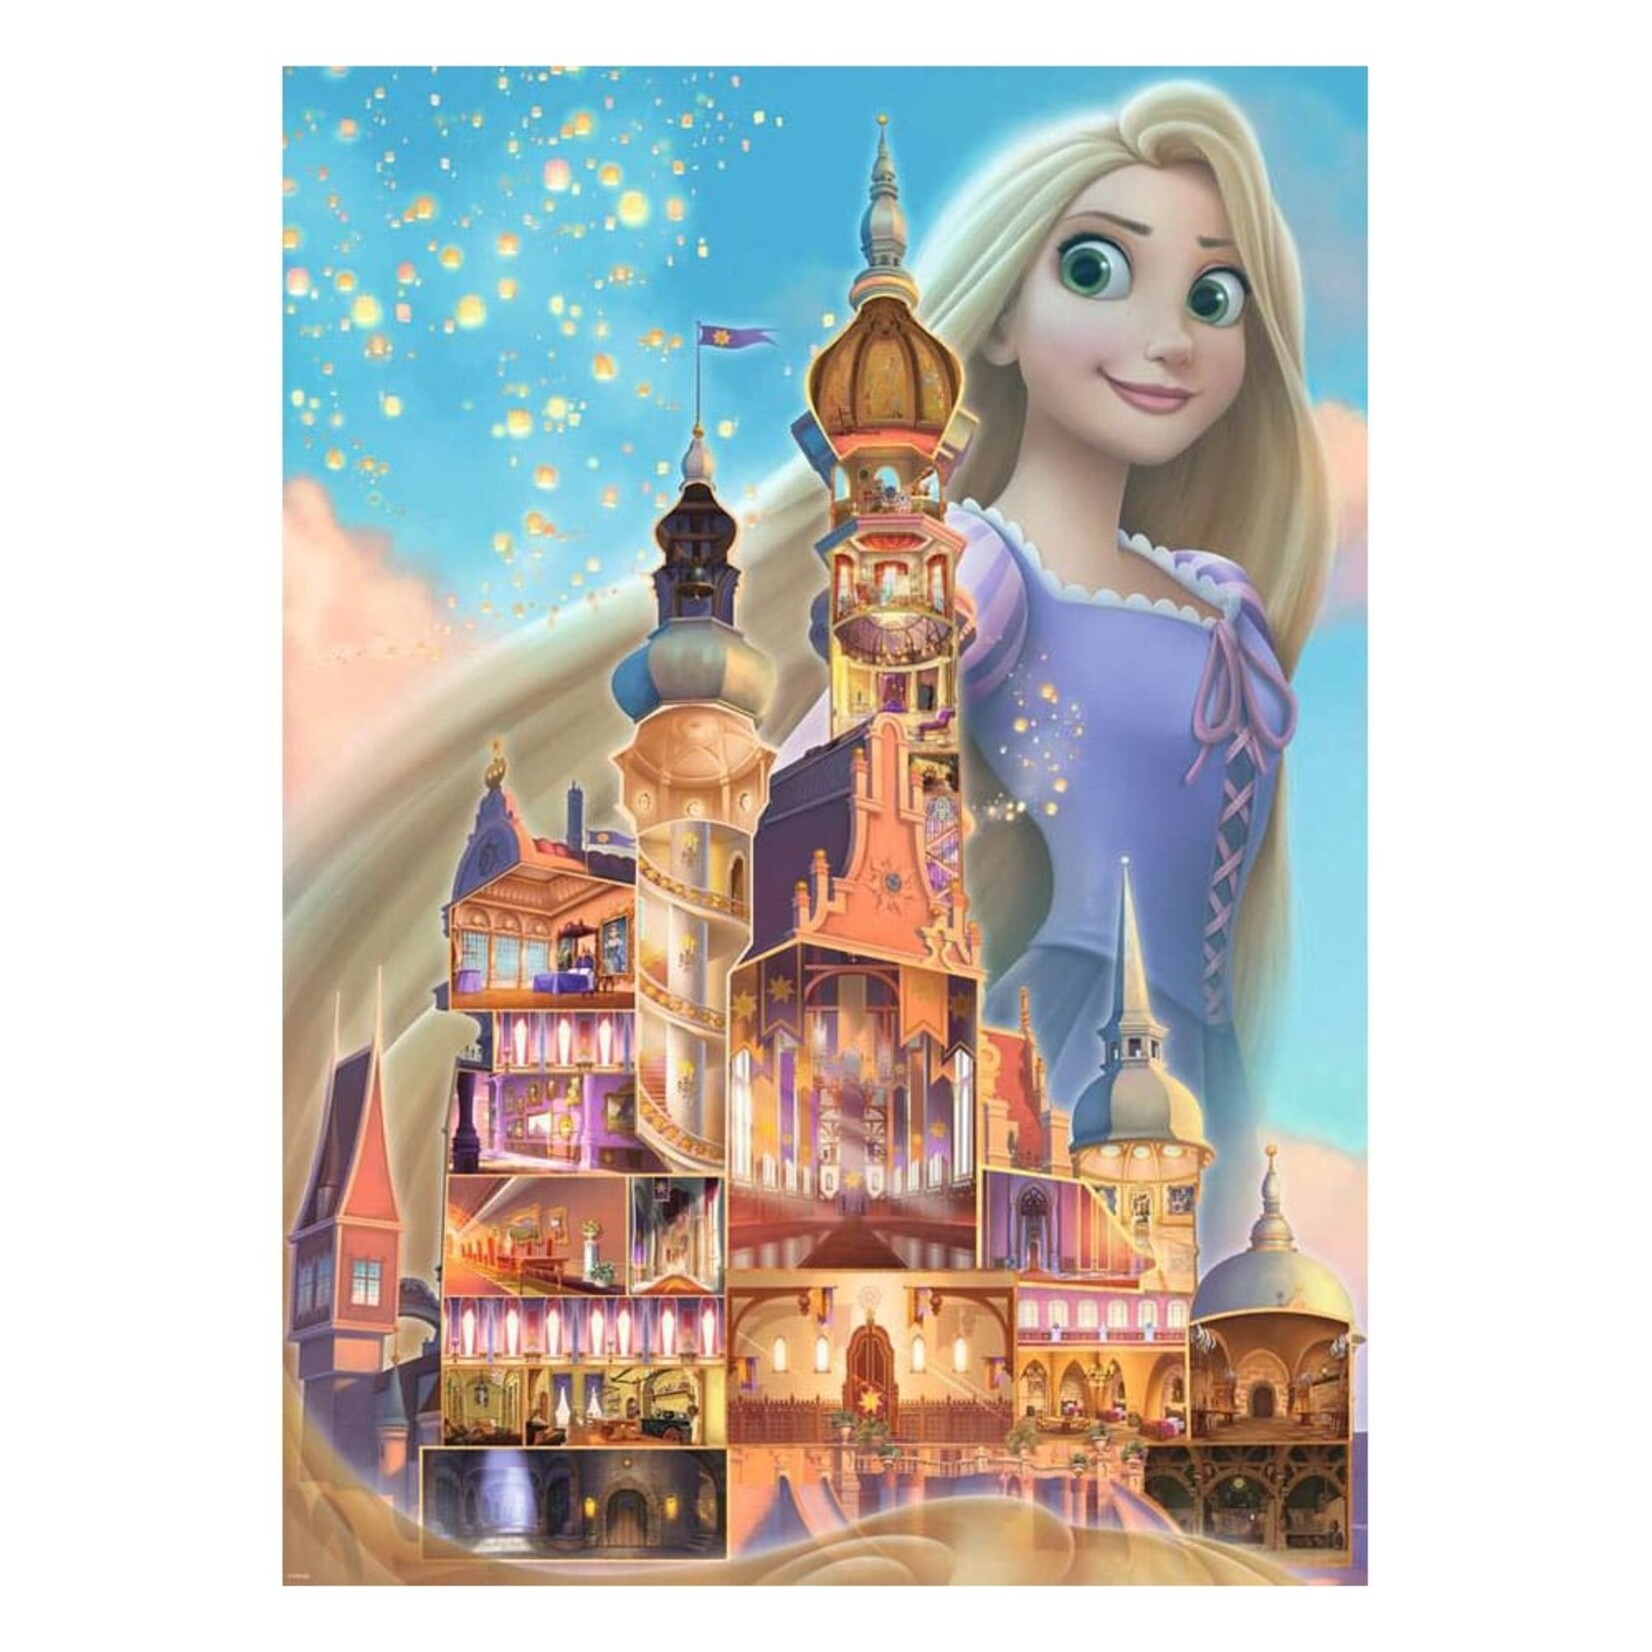 Ravensburger Ravensburger Disney Castle Collection Puzzle Rapunzel (Tangled) 1000 pcs